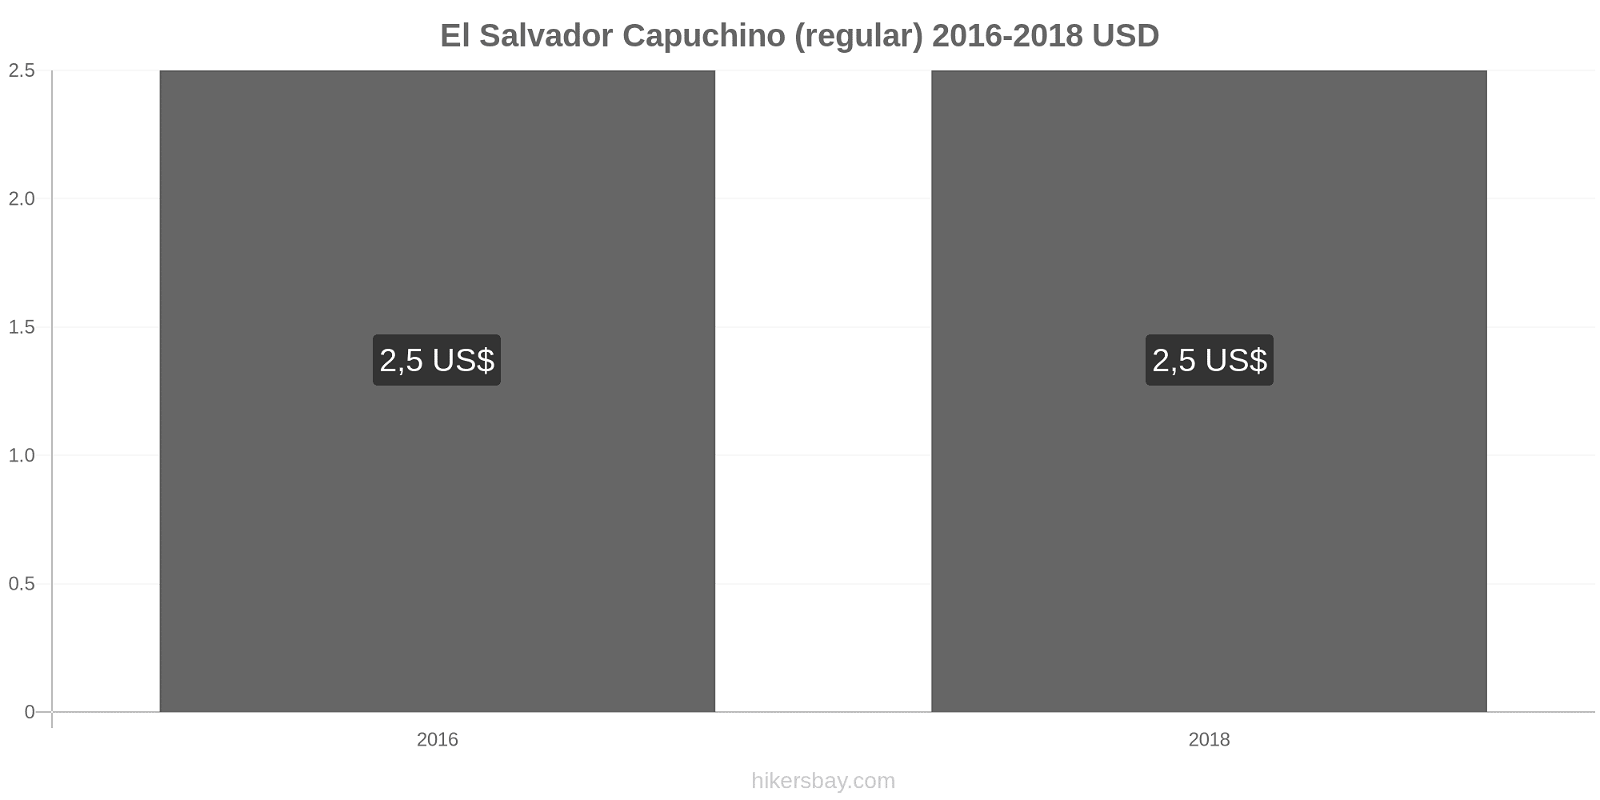 El Salvador cambios de precios Cappuccino hikersbay.com